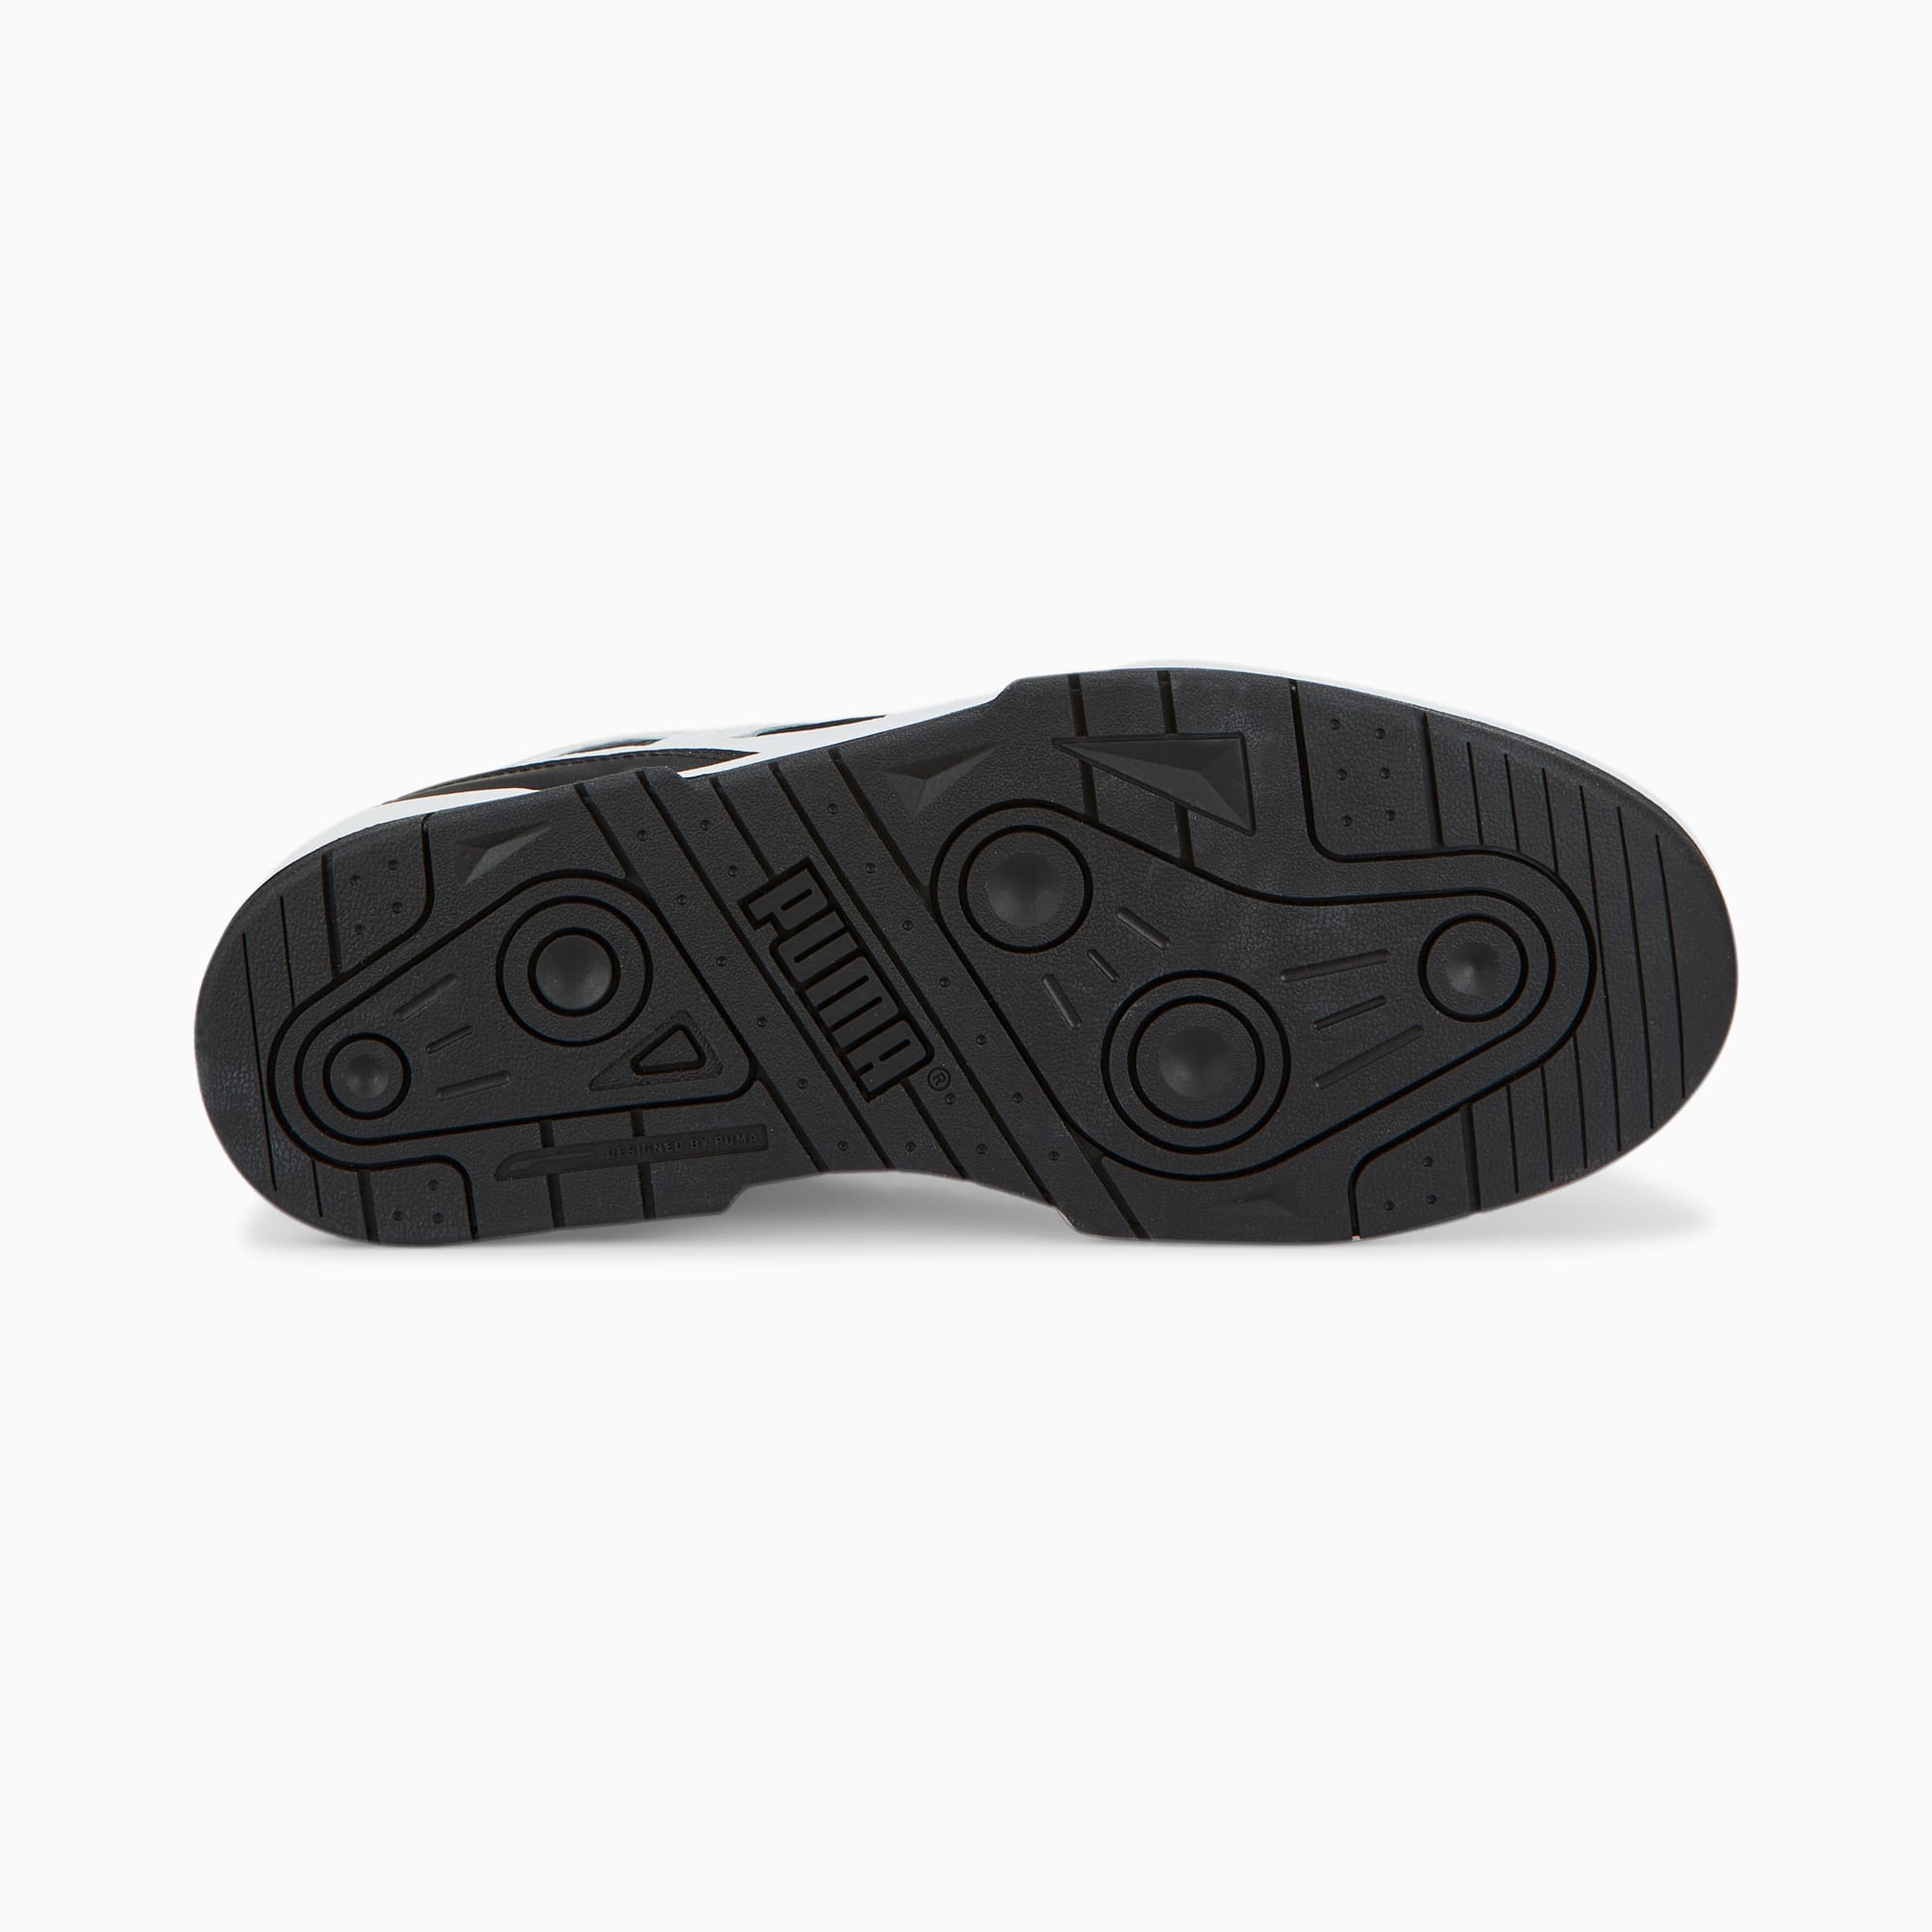 PUMA Zapatillas Slipstream Leather, Blanco/Negro